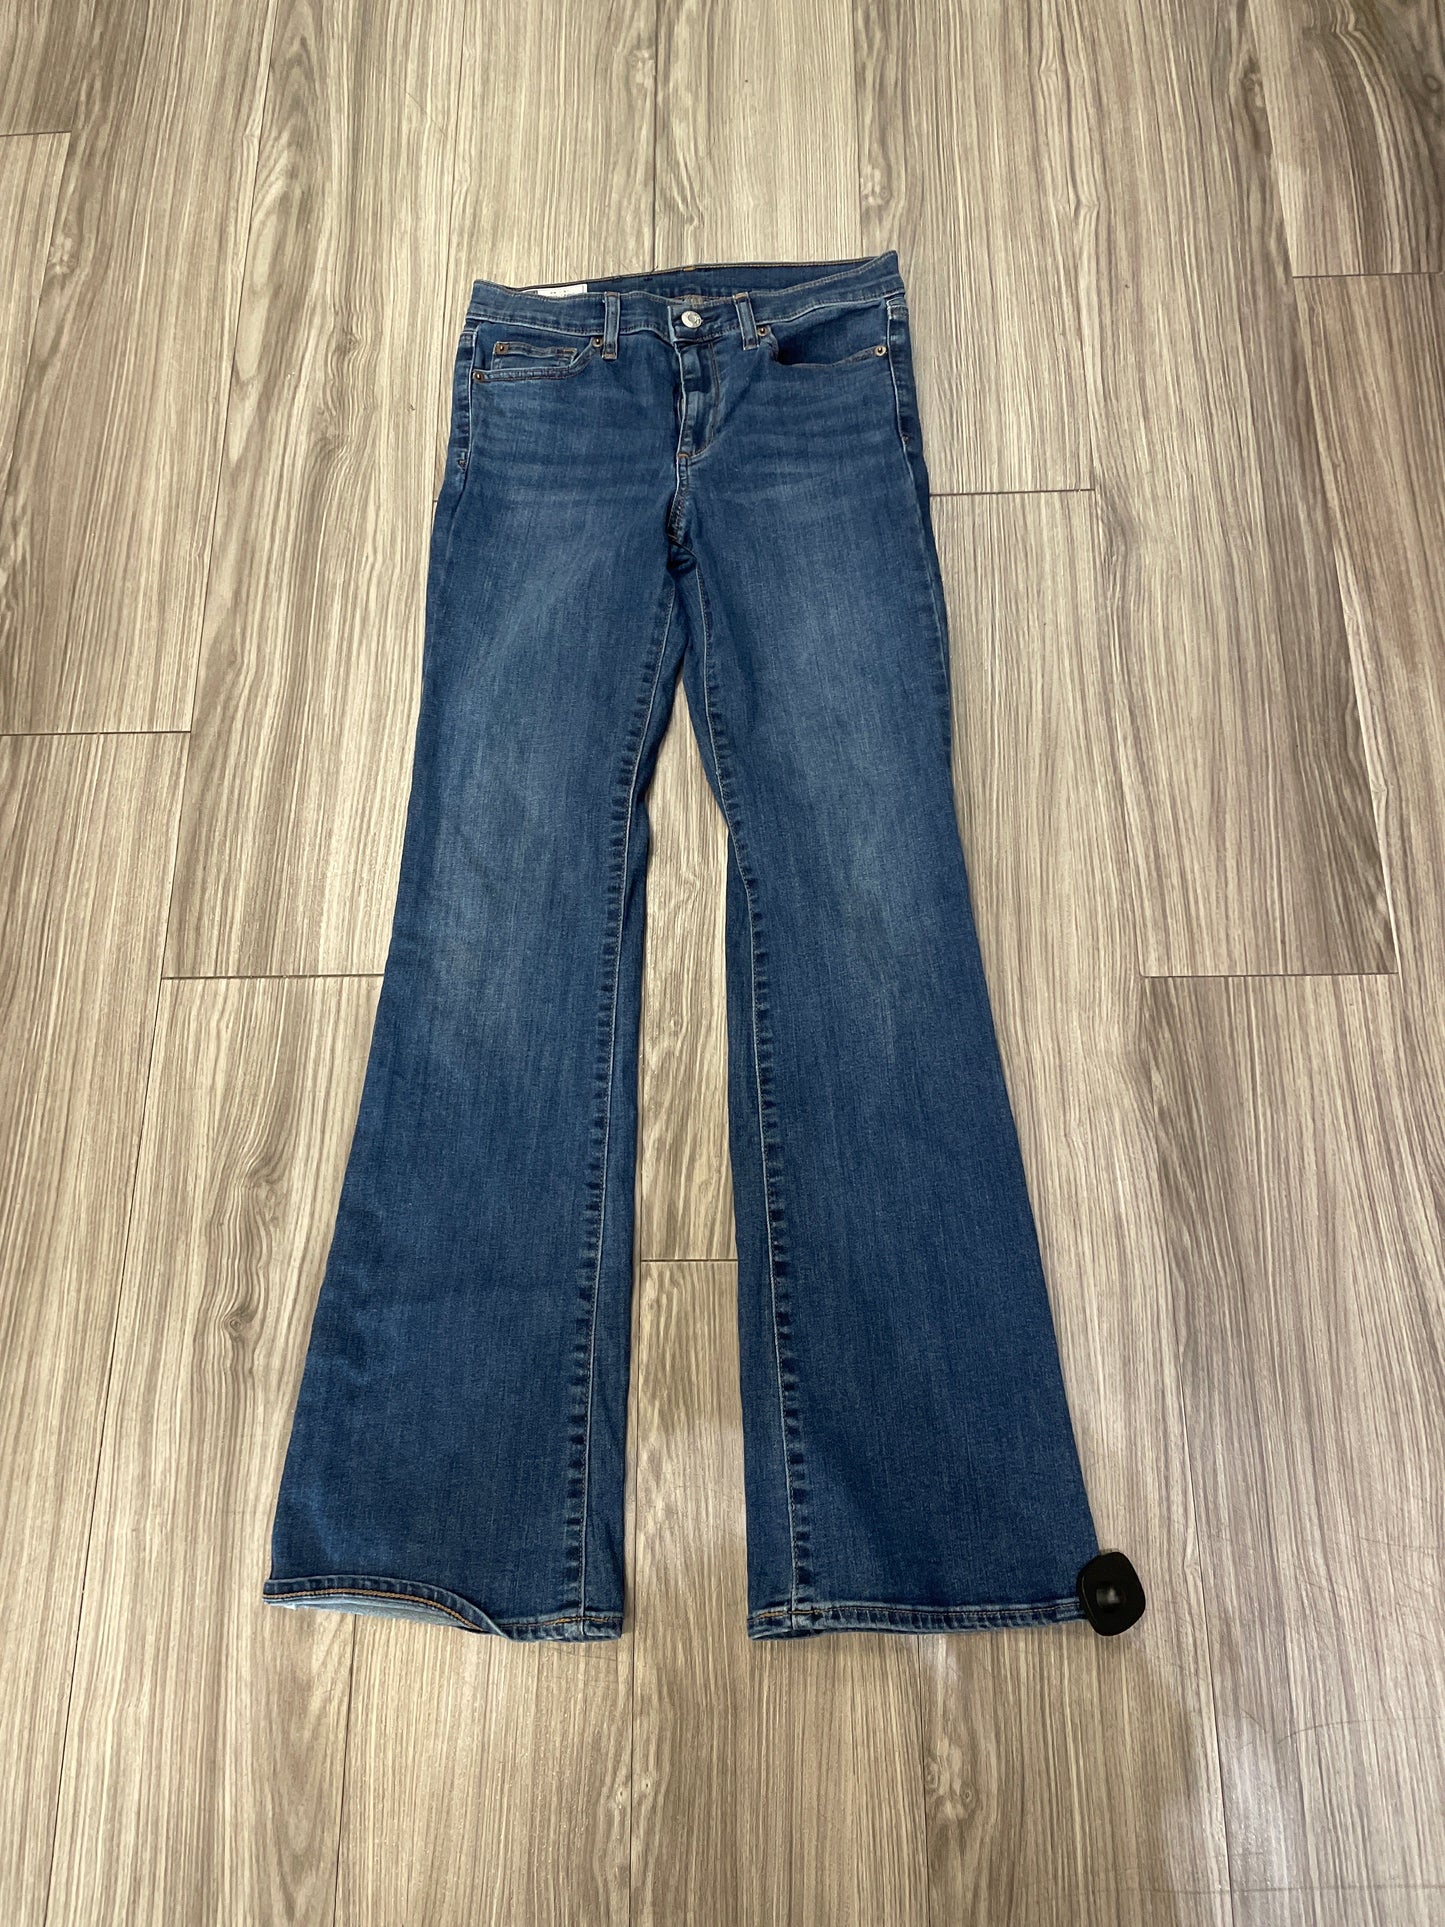 Blue Jeans Boot Cut Gap, Size 6